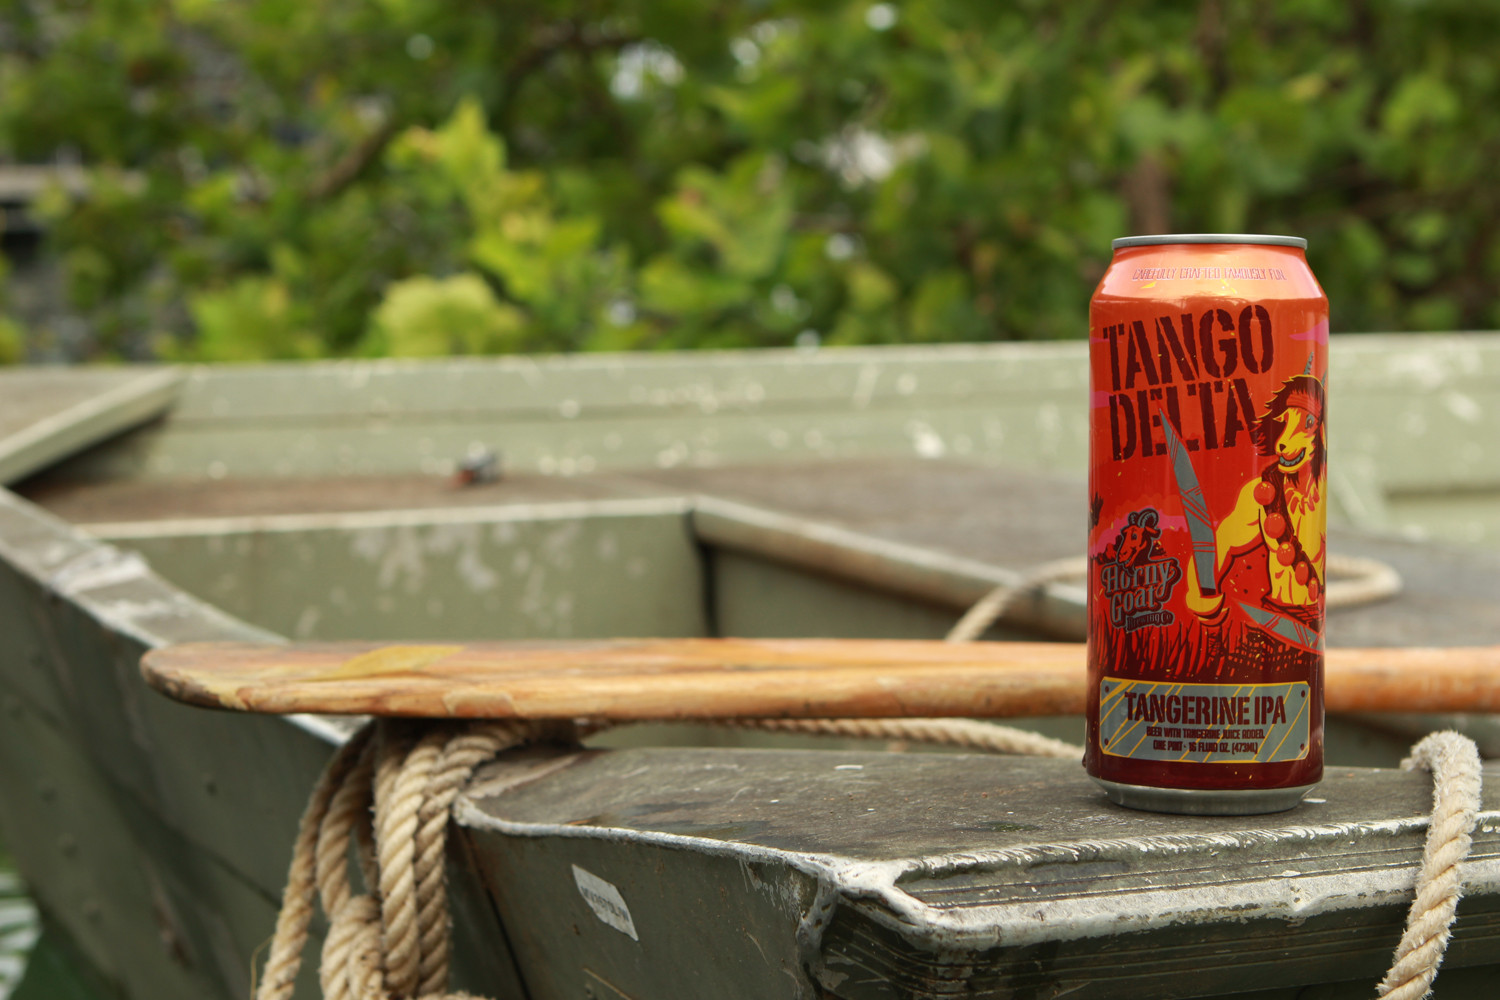 Tango Delta is a tangerine IPA summer fruit beer.